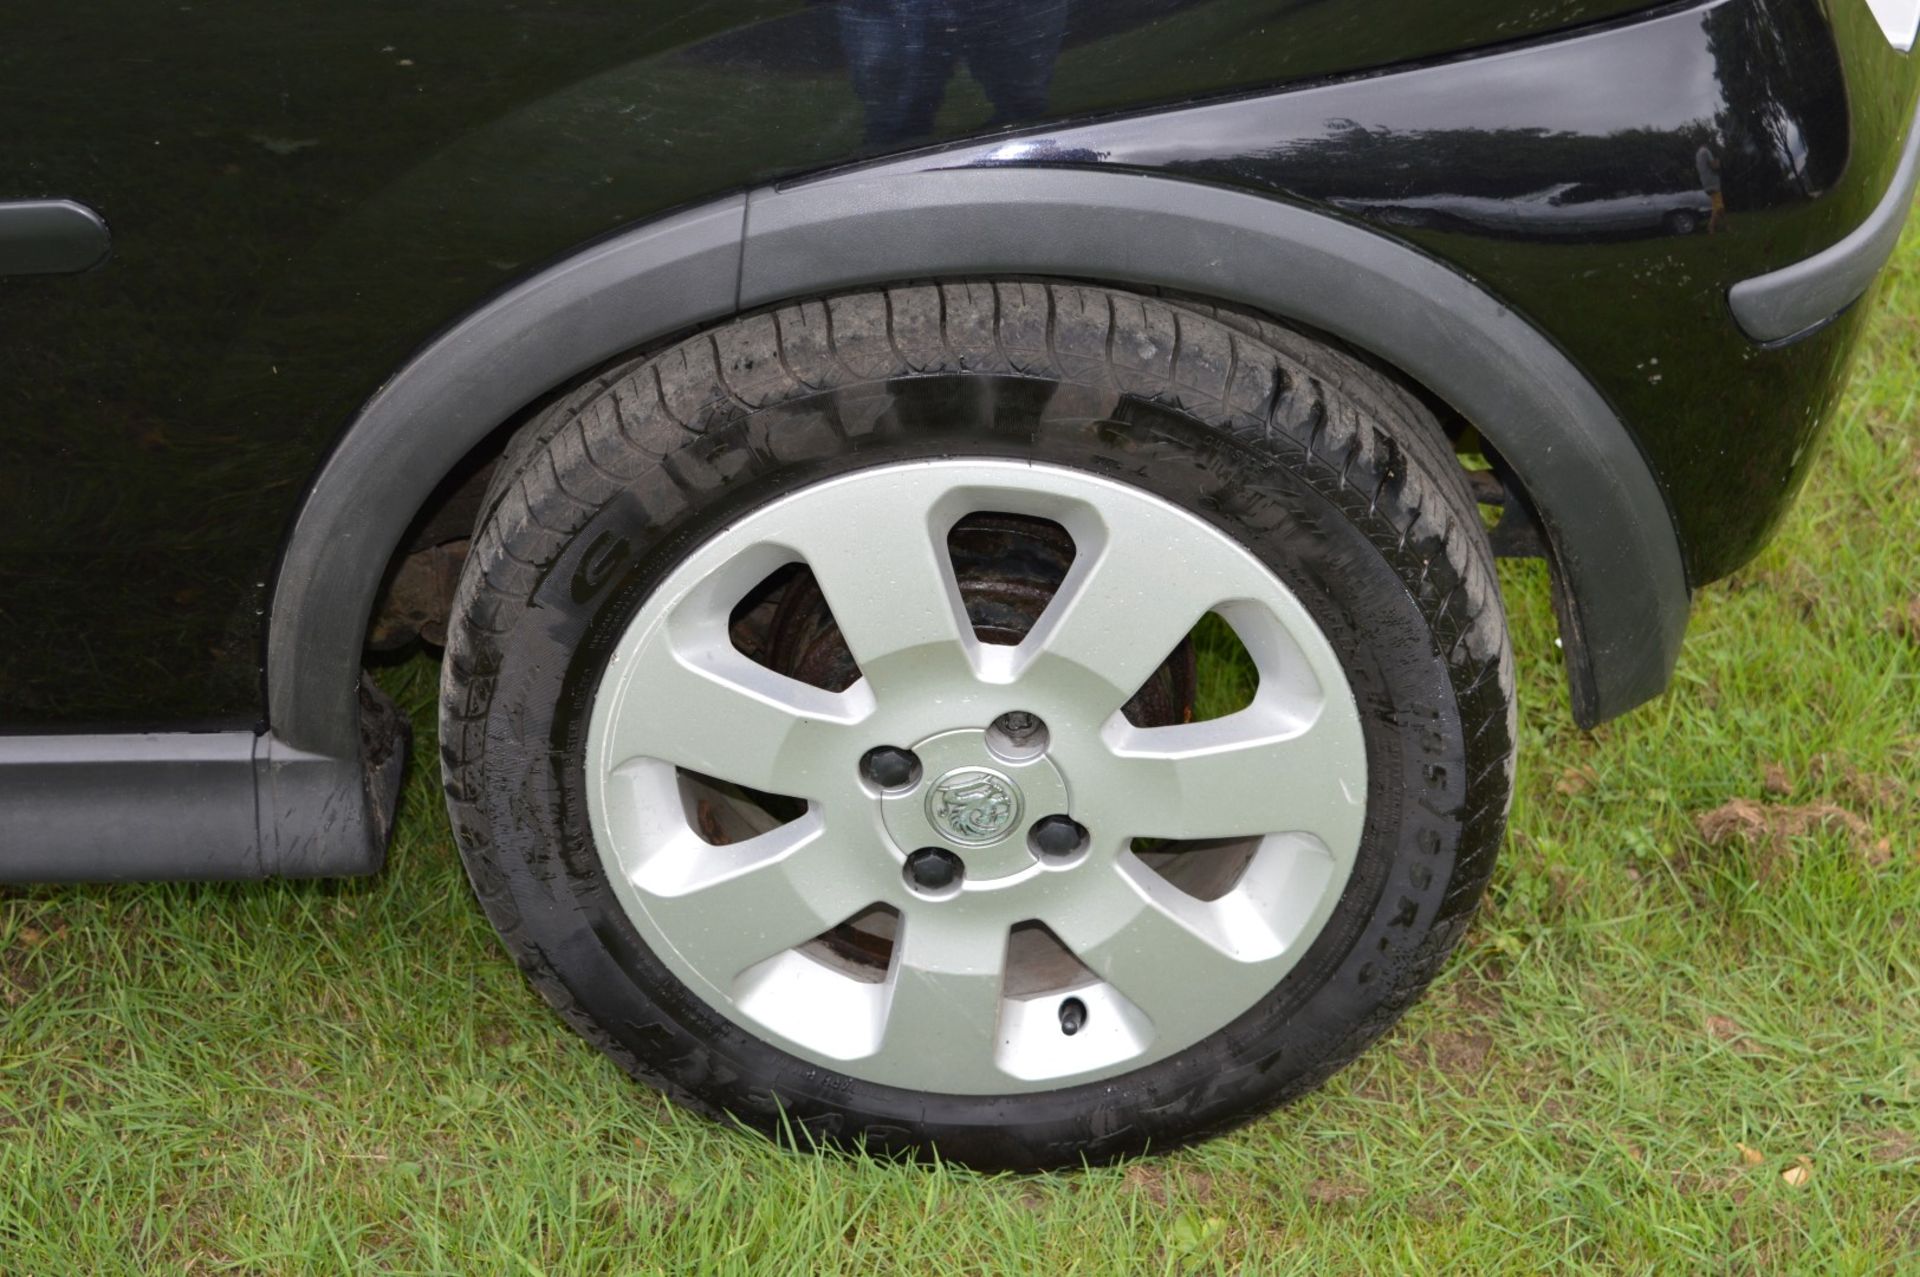 1 x Vauxhall Corsa SXI+ 3 Door Hatchback 1.2 - 2006 56 Plate - 78,000 Miles - MOT June 2018 - Image 16 of 36